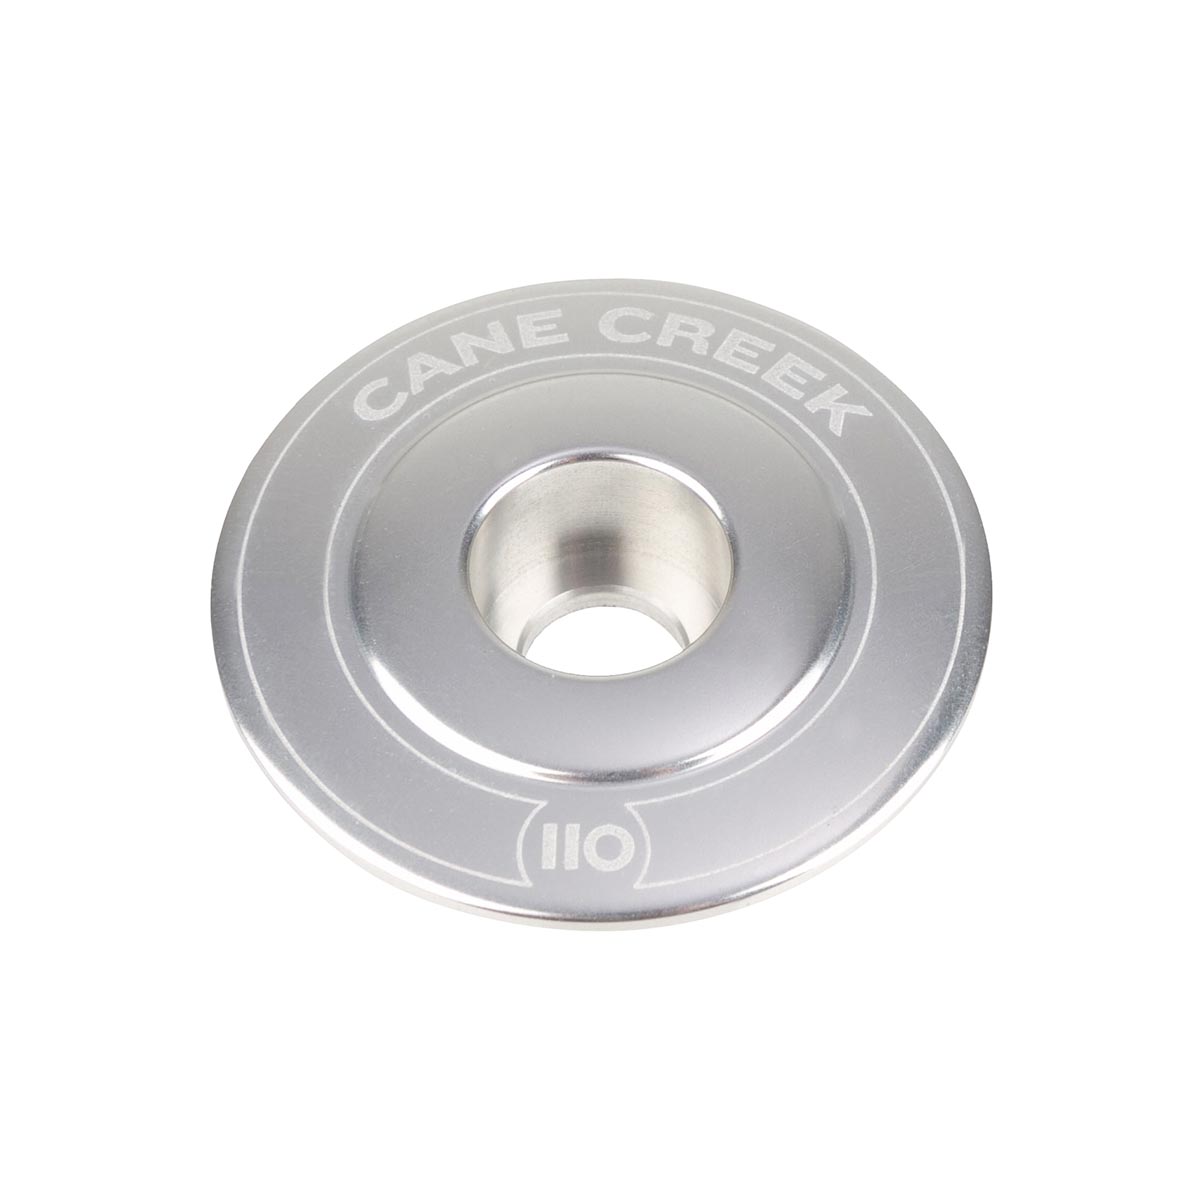 Cane Creek Tappo Serie Sterzo 110 Argento, Alluminio, 1 1/8 Pollici